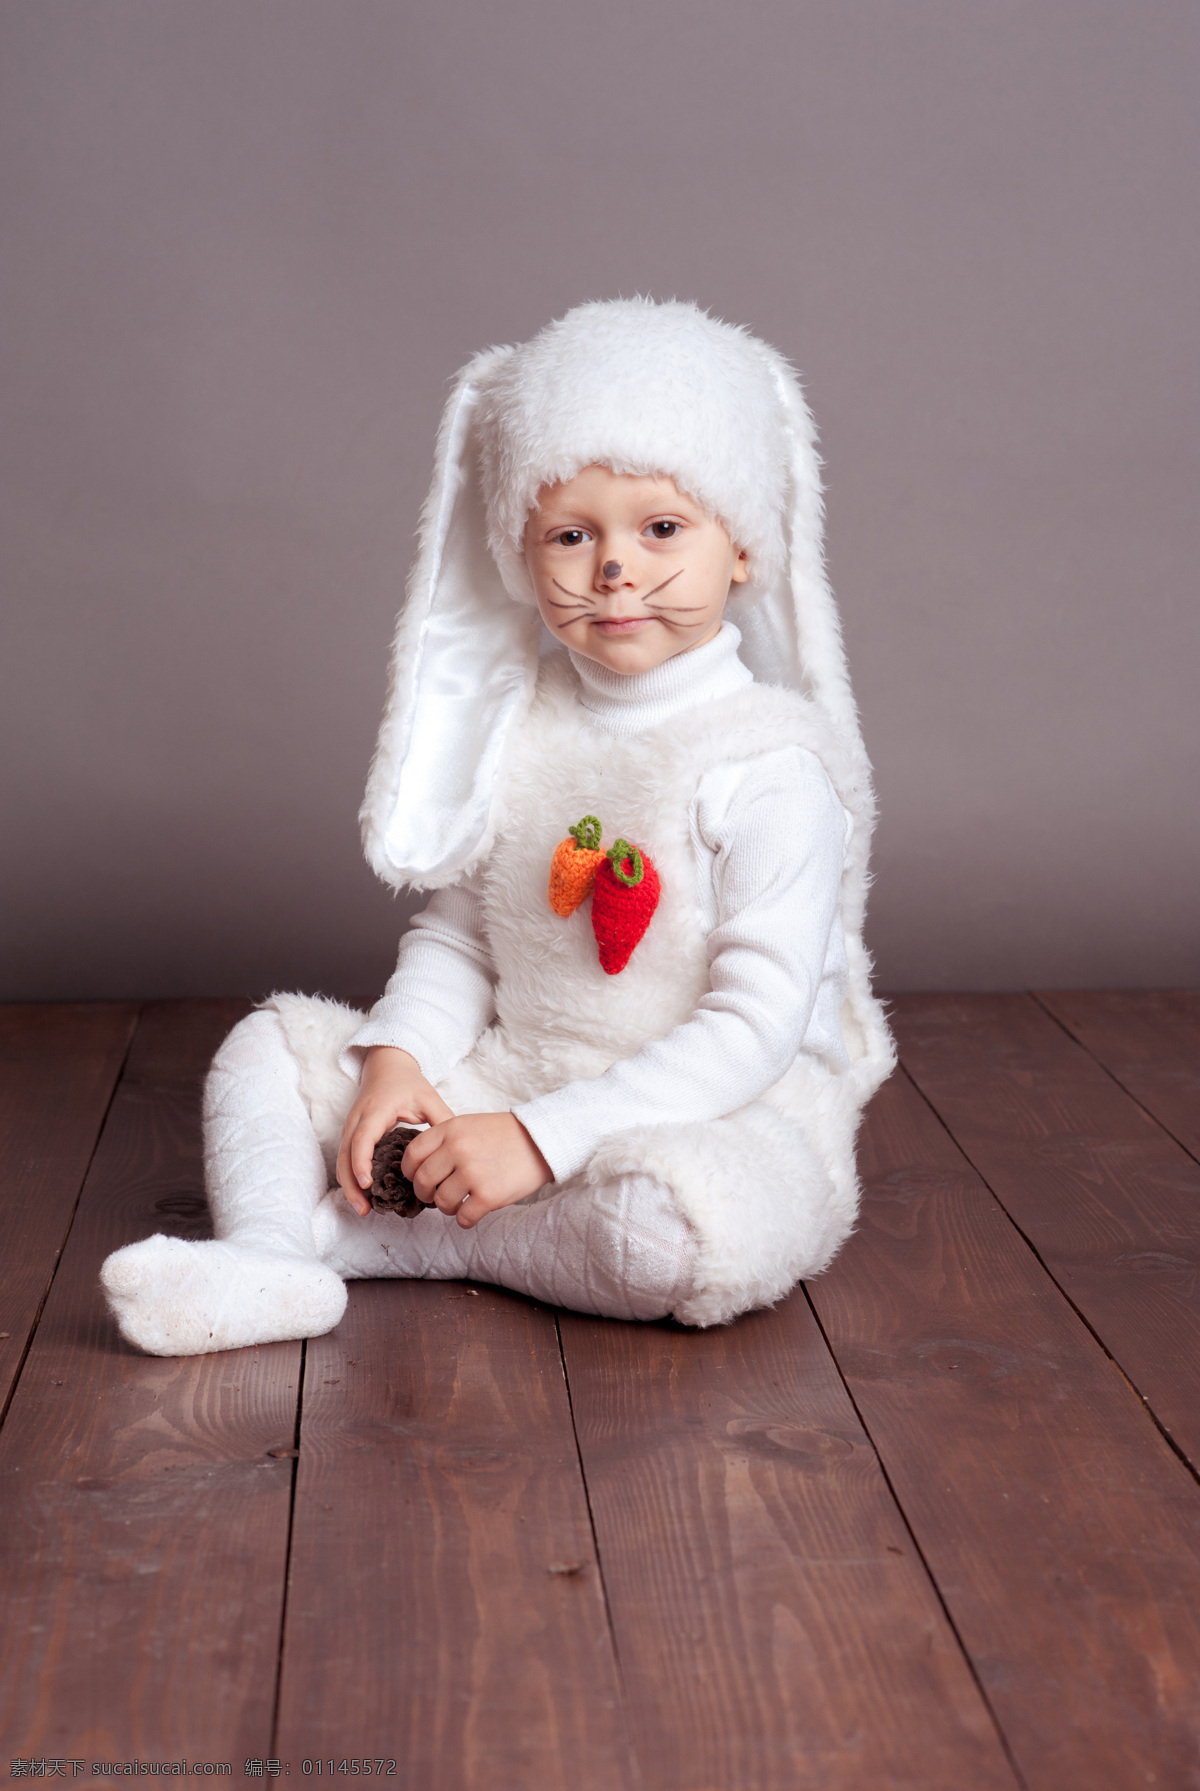 穿着 兔子 衣服 可爱 孩子 幼儿 儿童 外国小孩 人物图库 人物摄影 儿童图片 人物图片